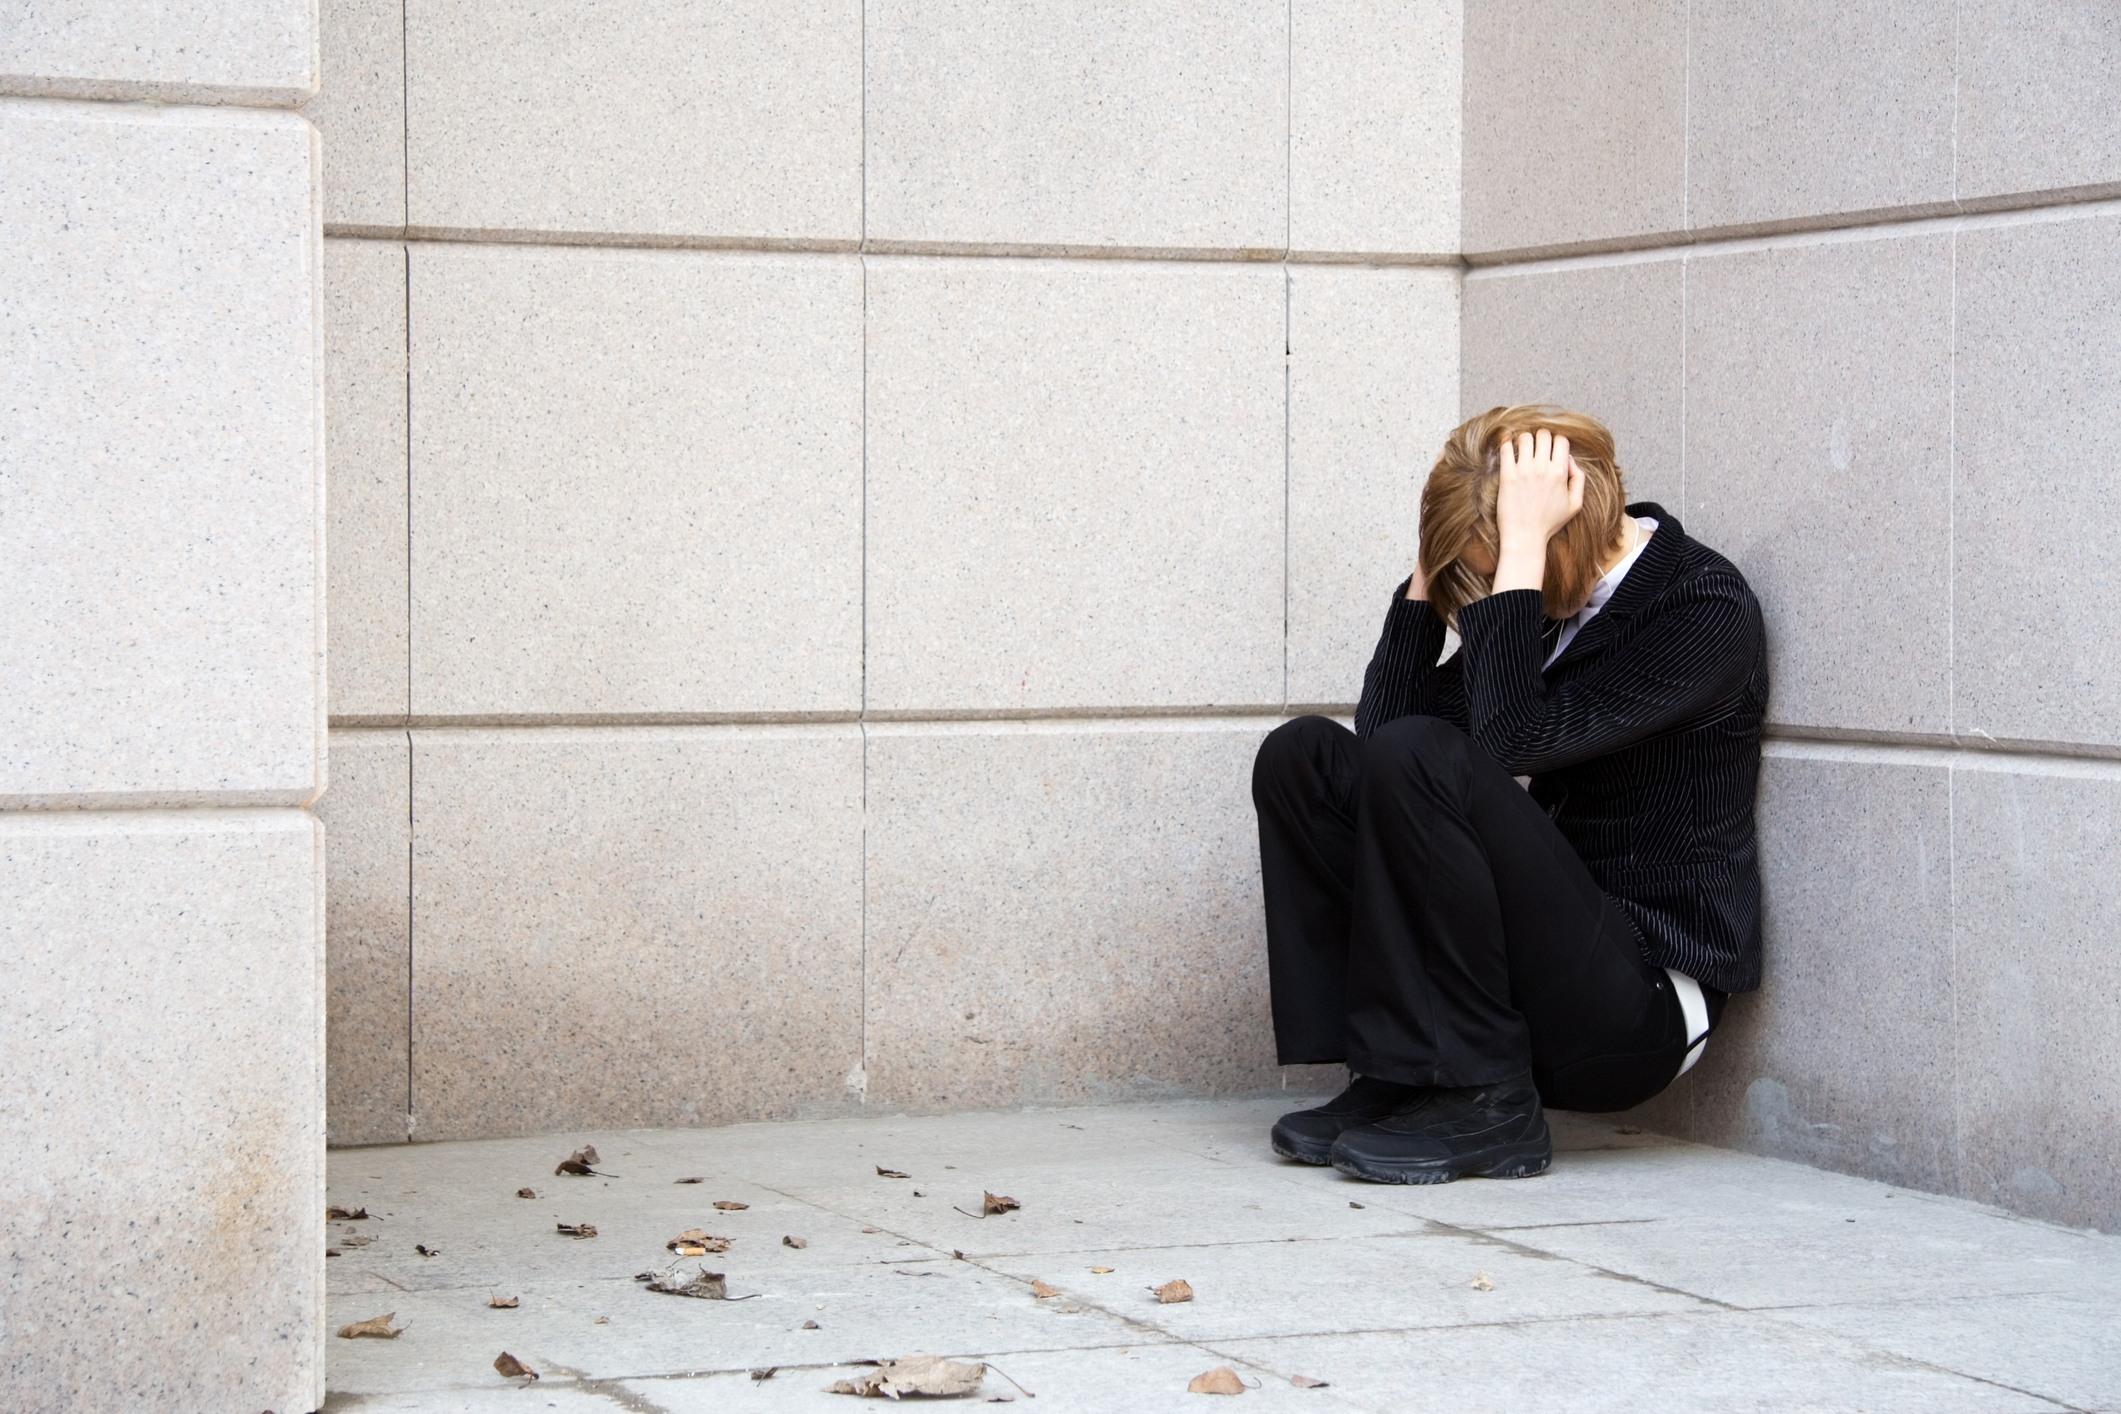 Jedna czwarta nastolatków ma myśli samobójcze. Stan przeznaczy 20 mln dolarów na walkę z kryzysem zdrowia psychicznego